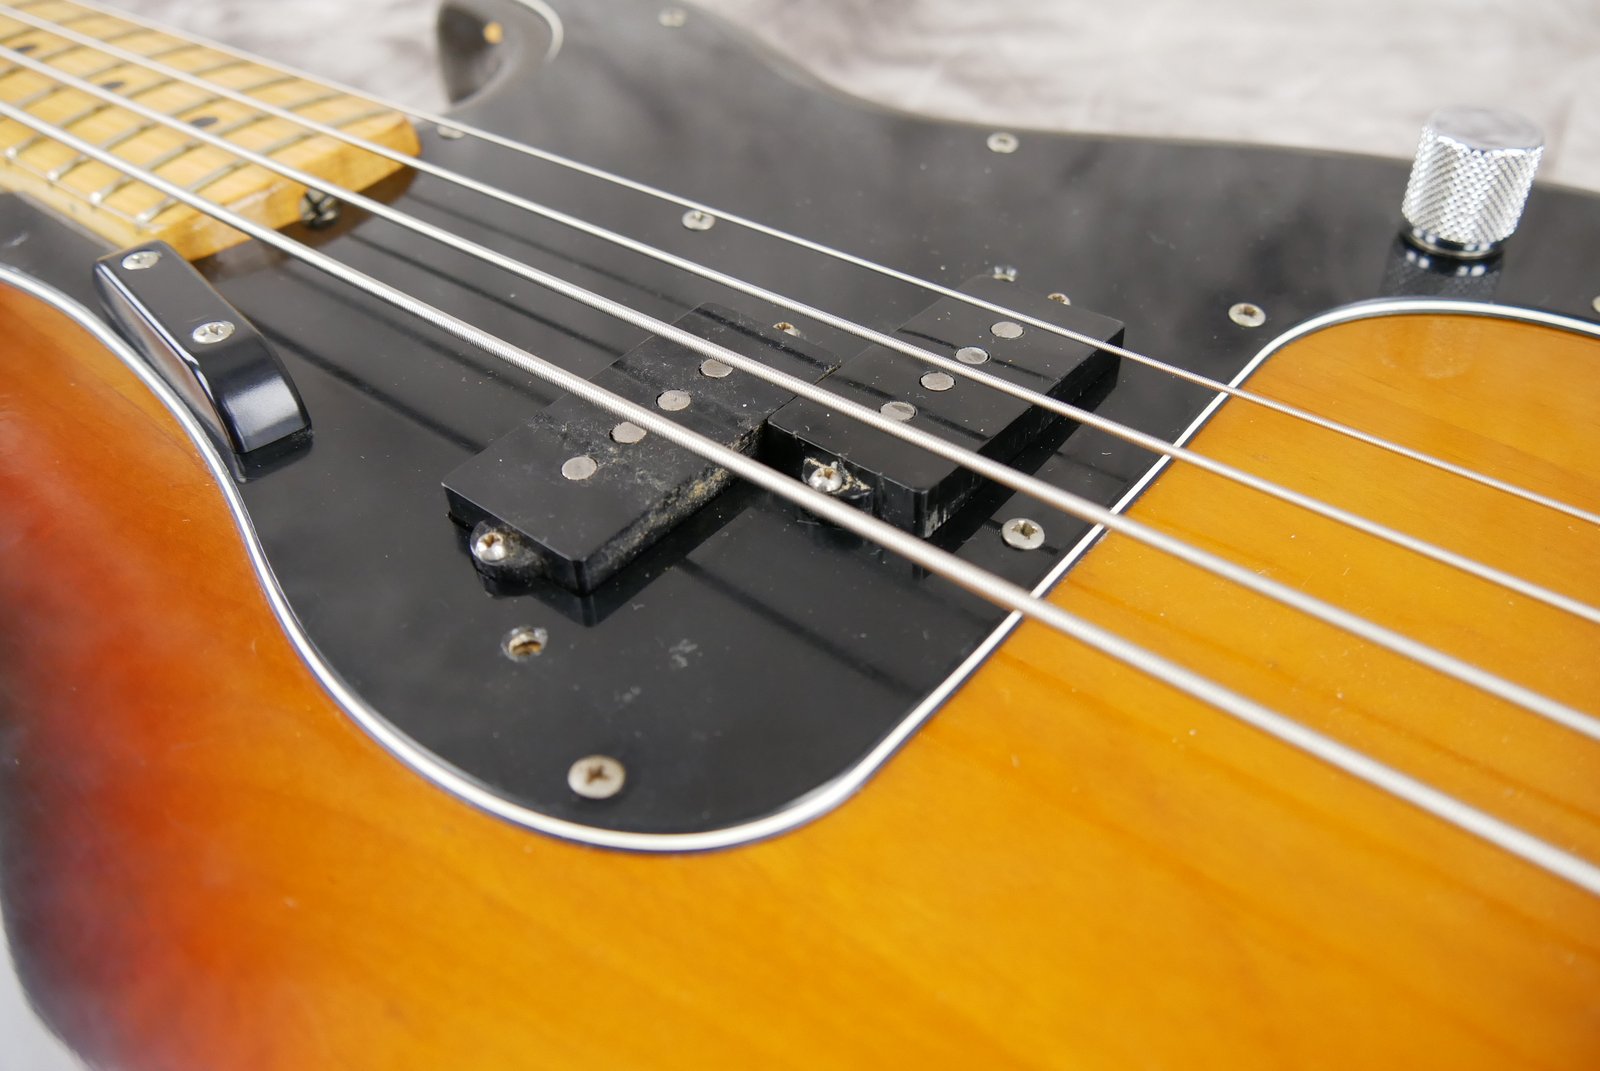 Fender-Precision-Bass-1974-sunburst-016.JPG